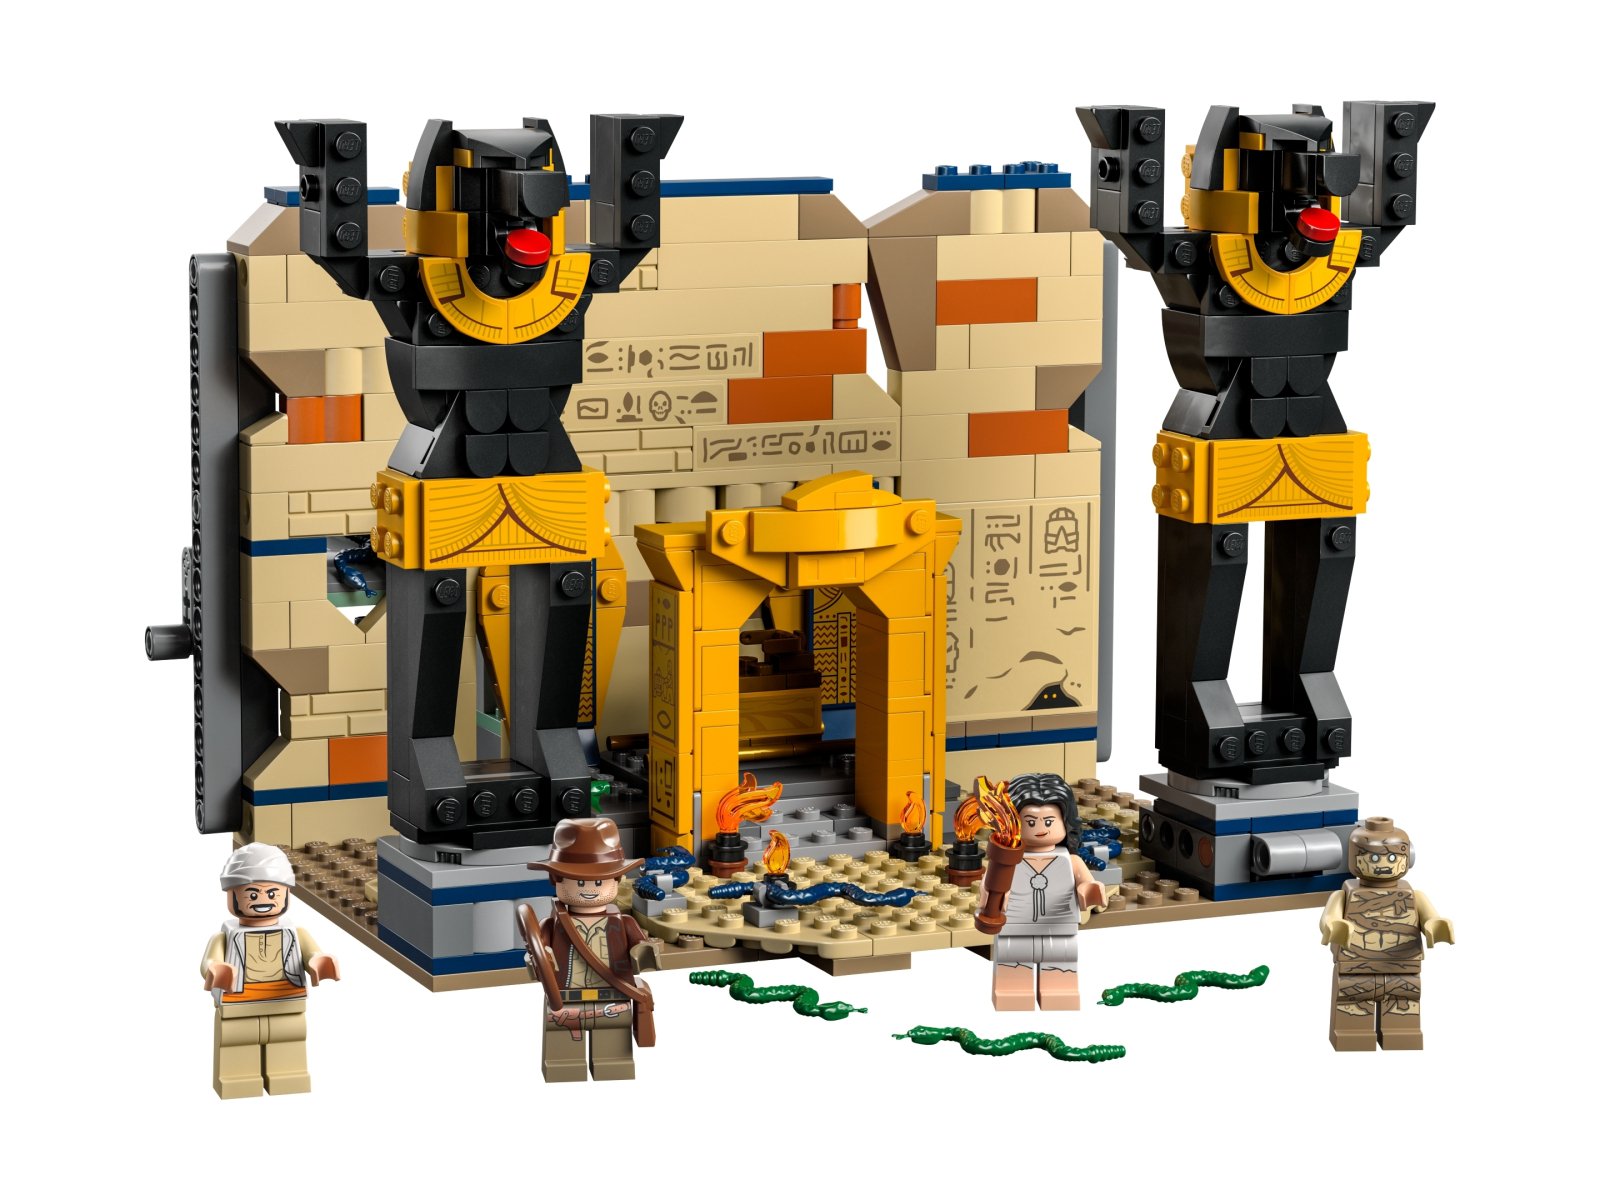 LEGO 77013 Indiana Jones Ucieczka z zaginionego grobowca